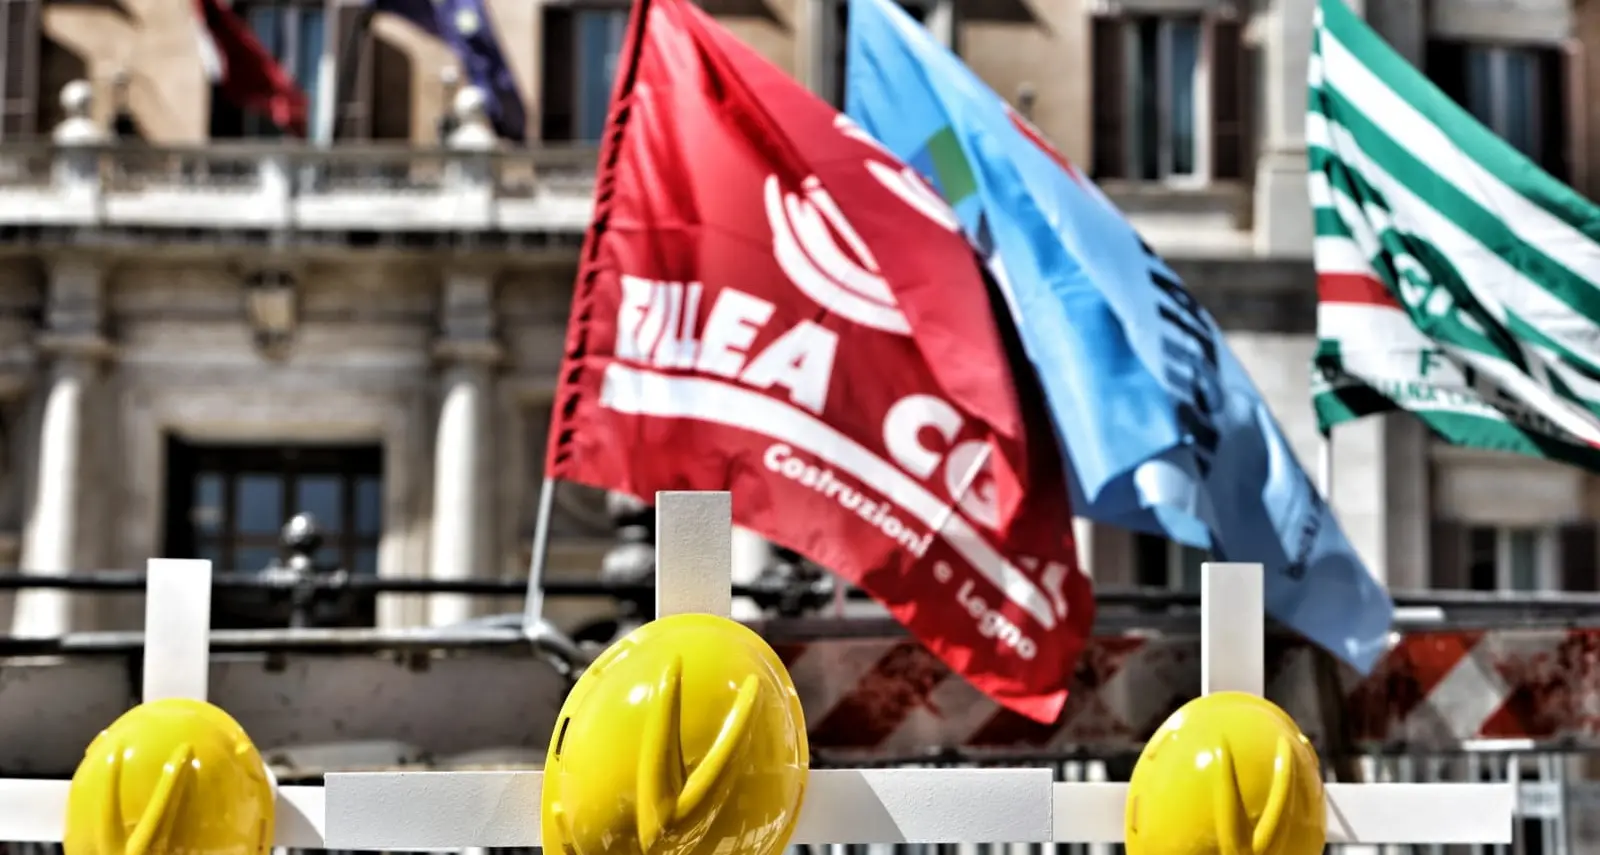 Sicurezza: CGIL, CISL e UIL, mercoledì 12 maggio Assemblea nazionale “Fermiamo la strage nei luoghi di lavoro”